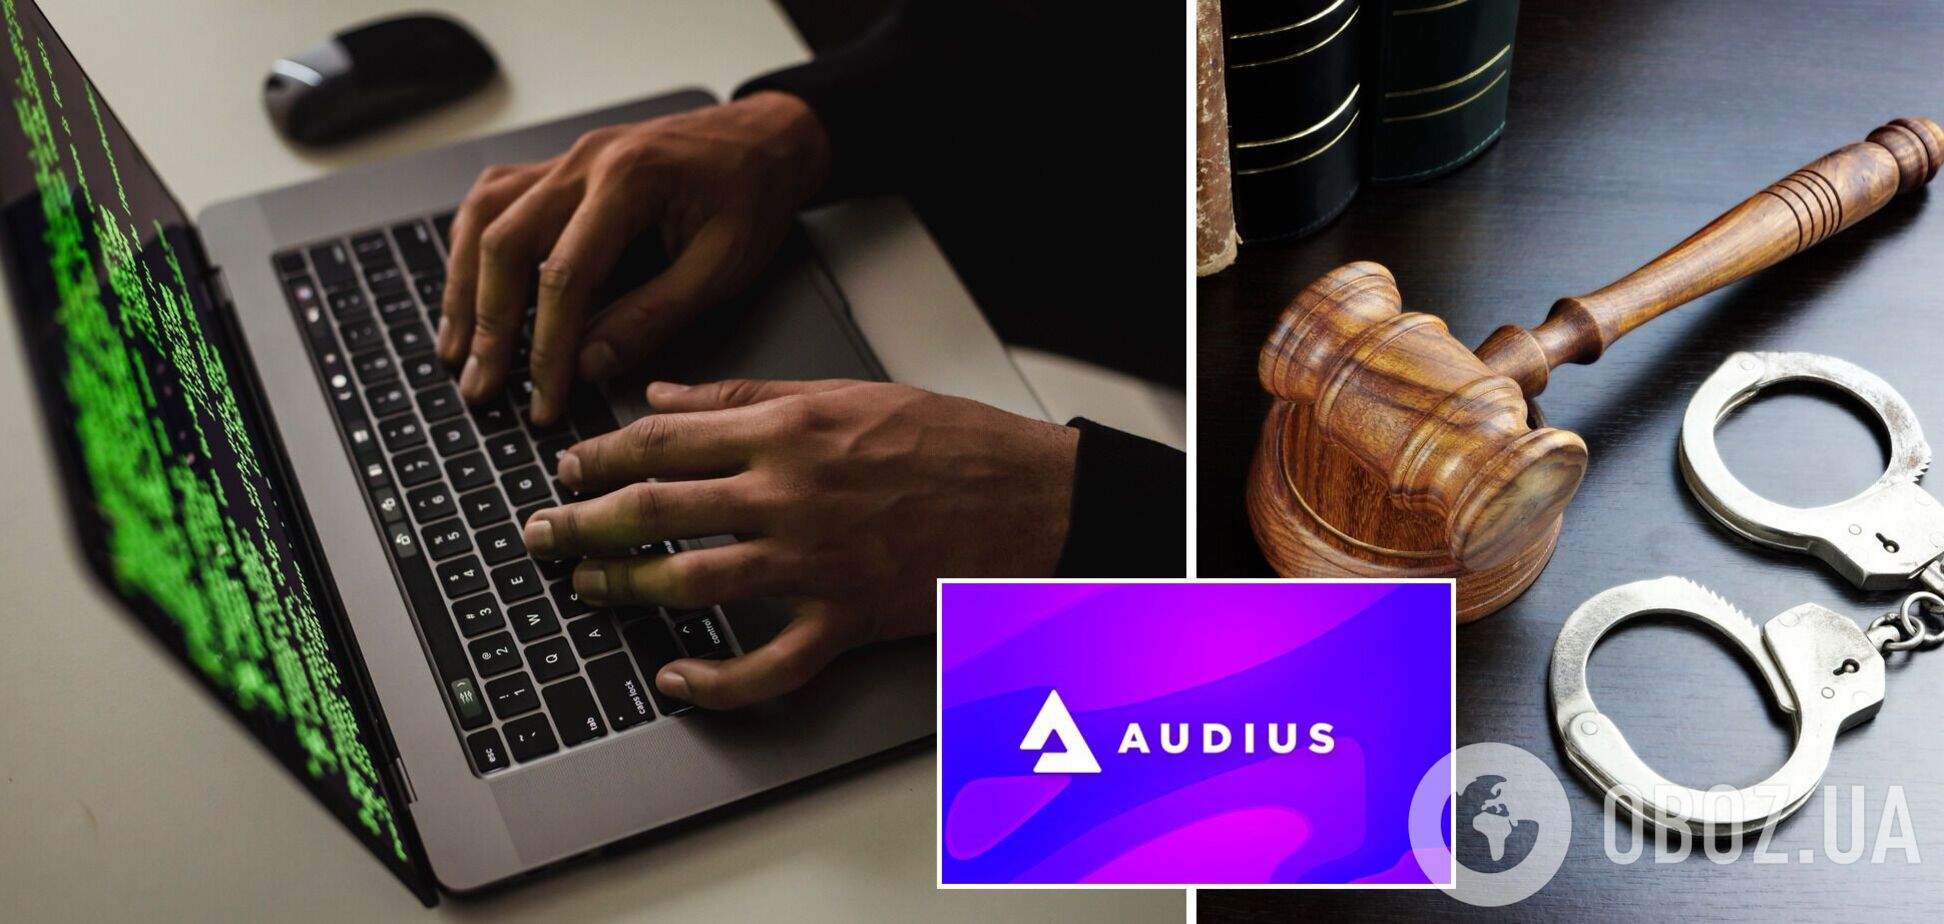 Популярна стрімінгова платформа Audius зазнала кібератаки